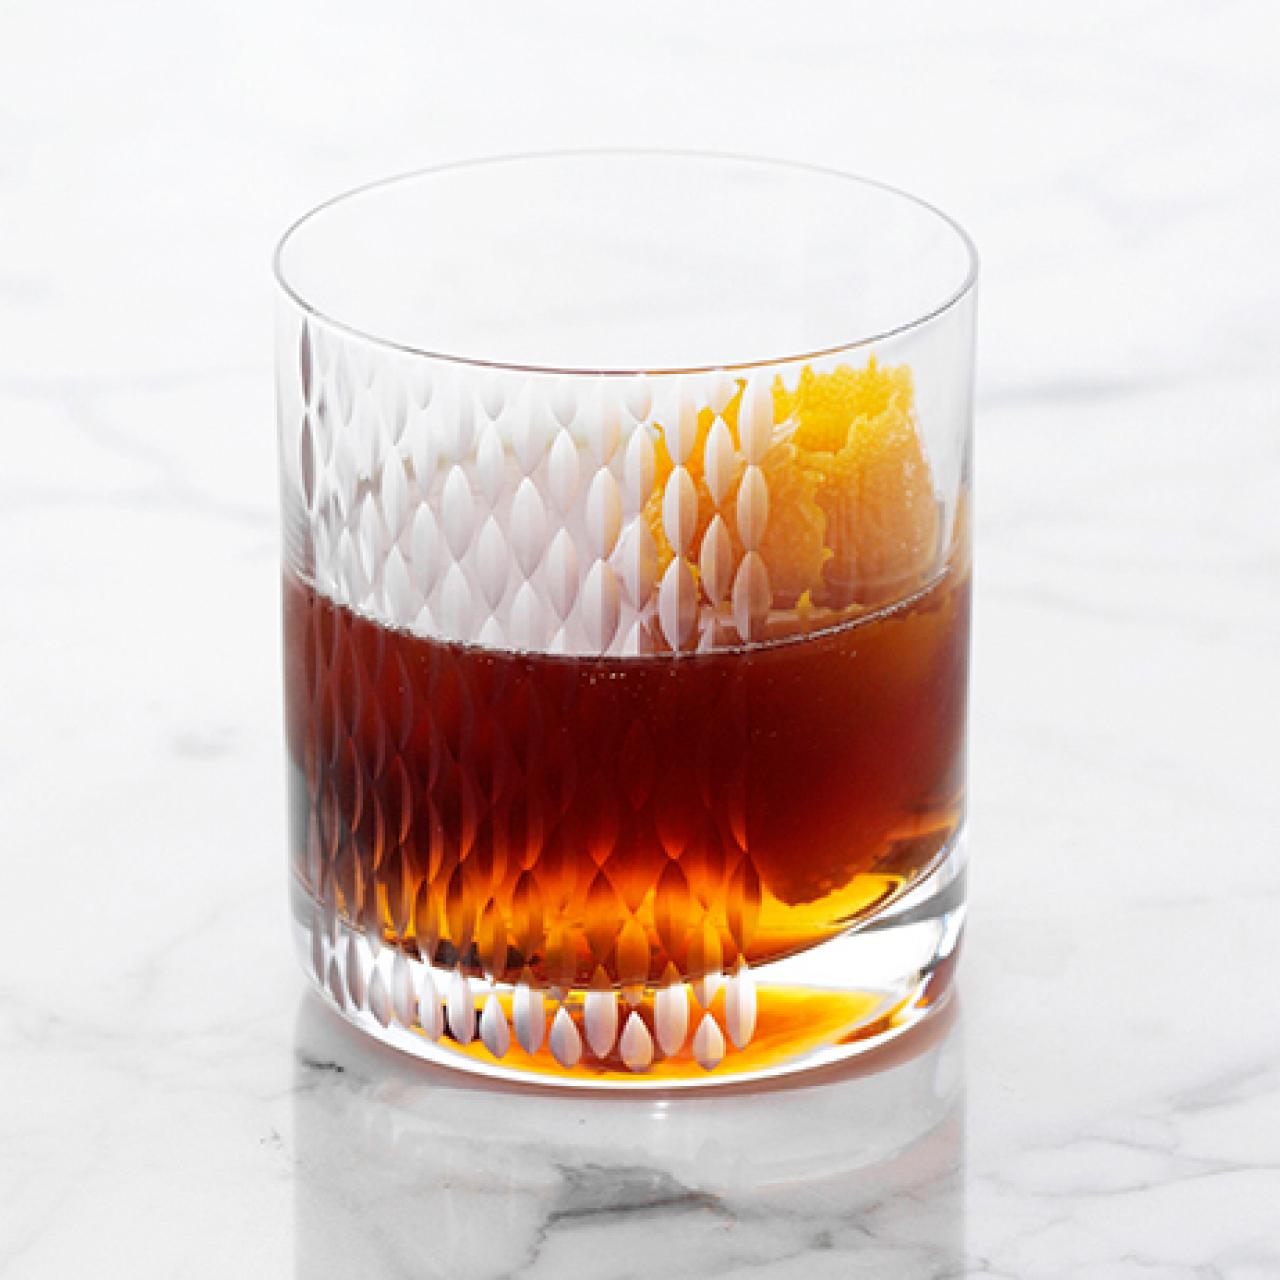 Classic Manhattan Cocktail Recipe, Ted Allen